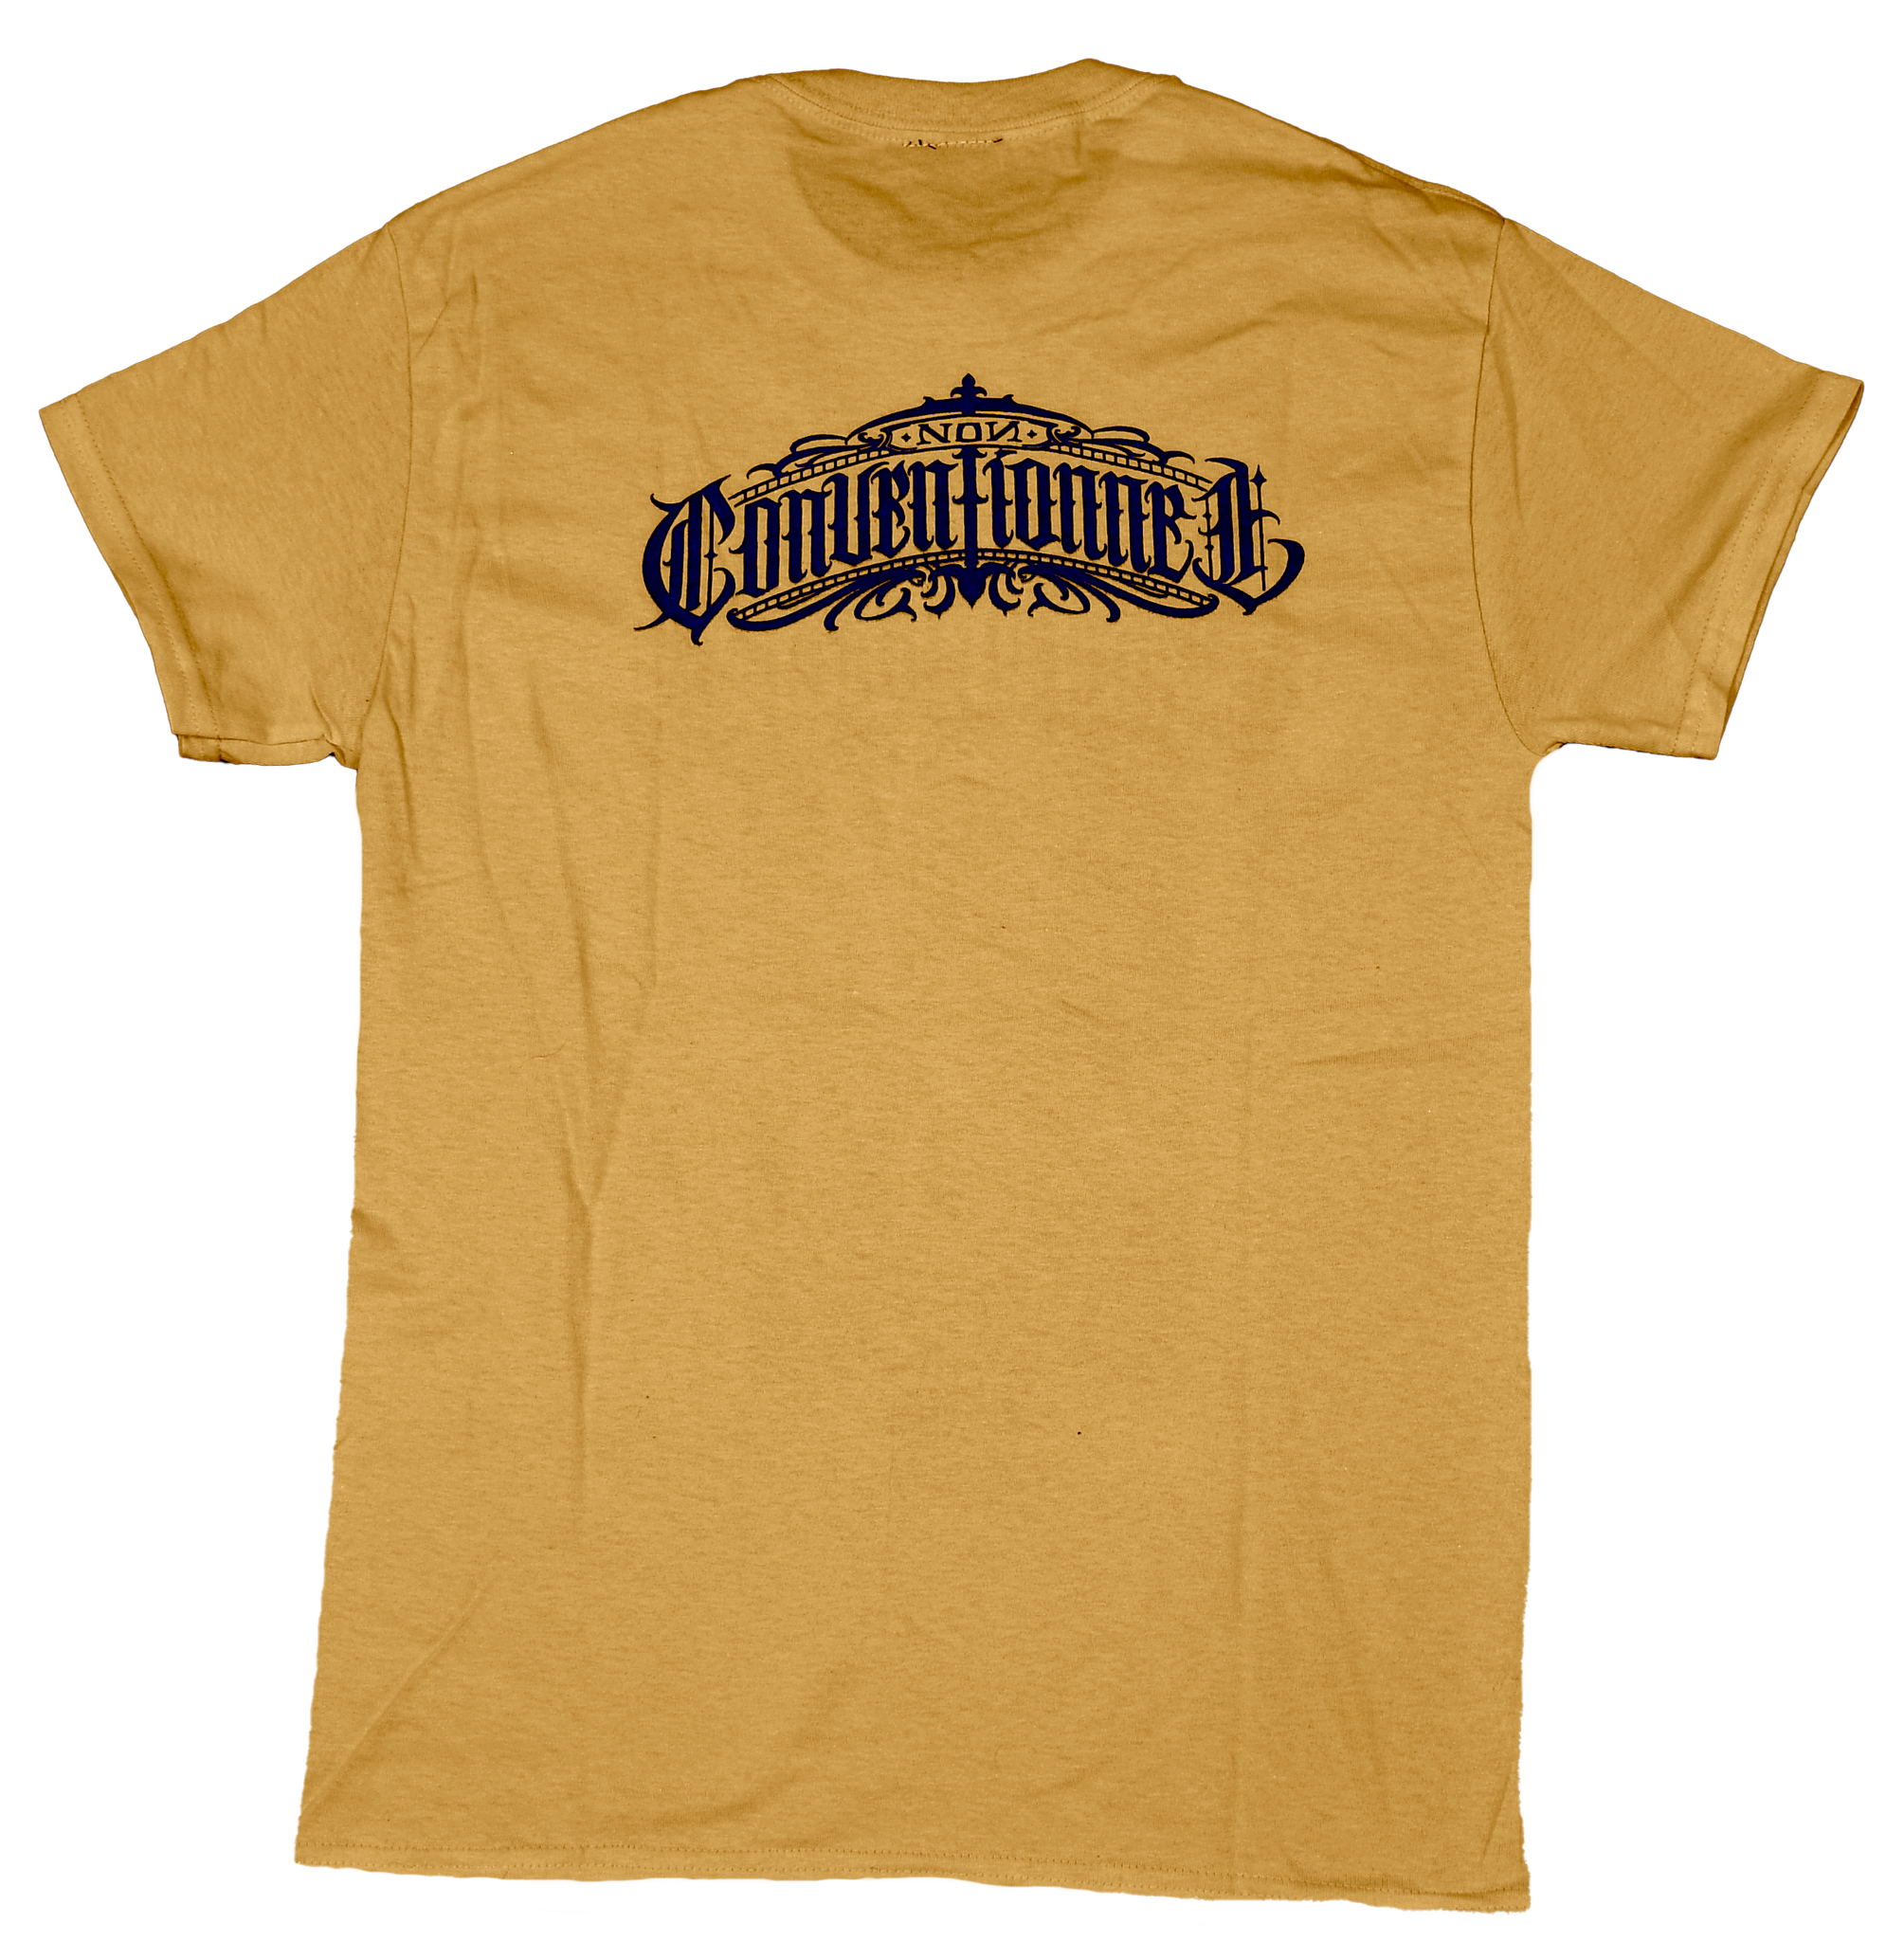 T-shirt Non conventionnel (jaune)